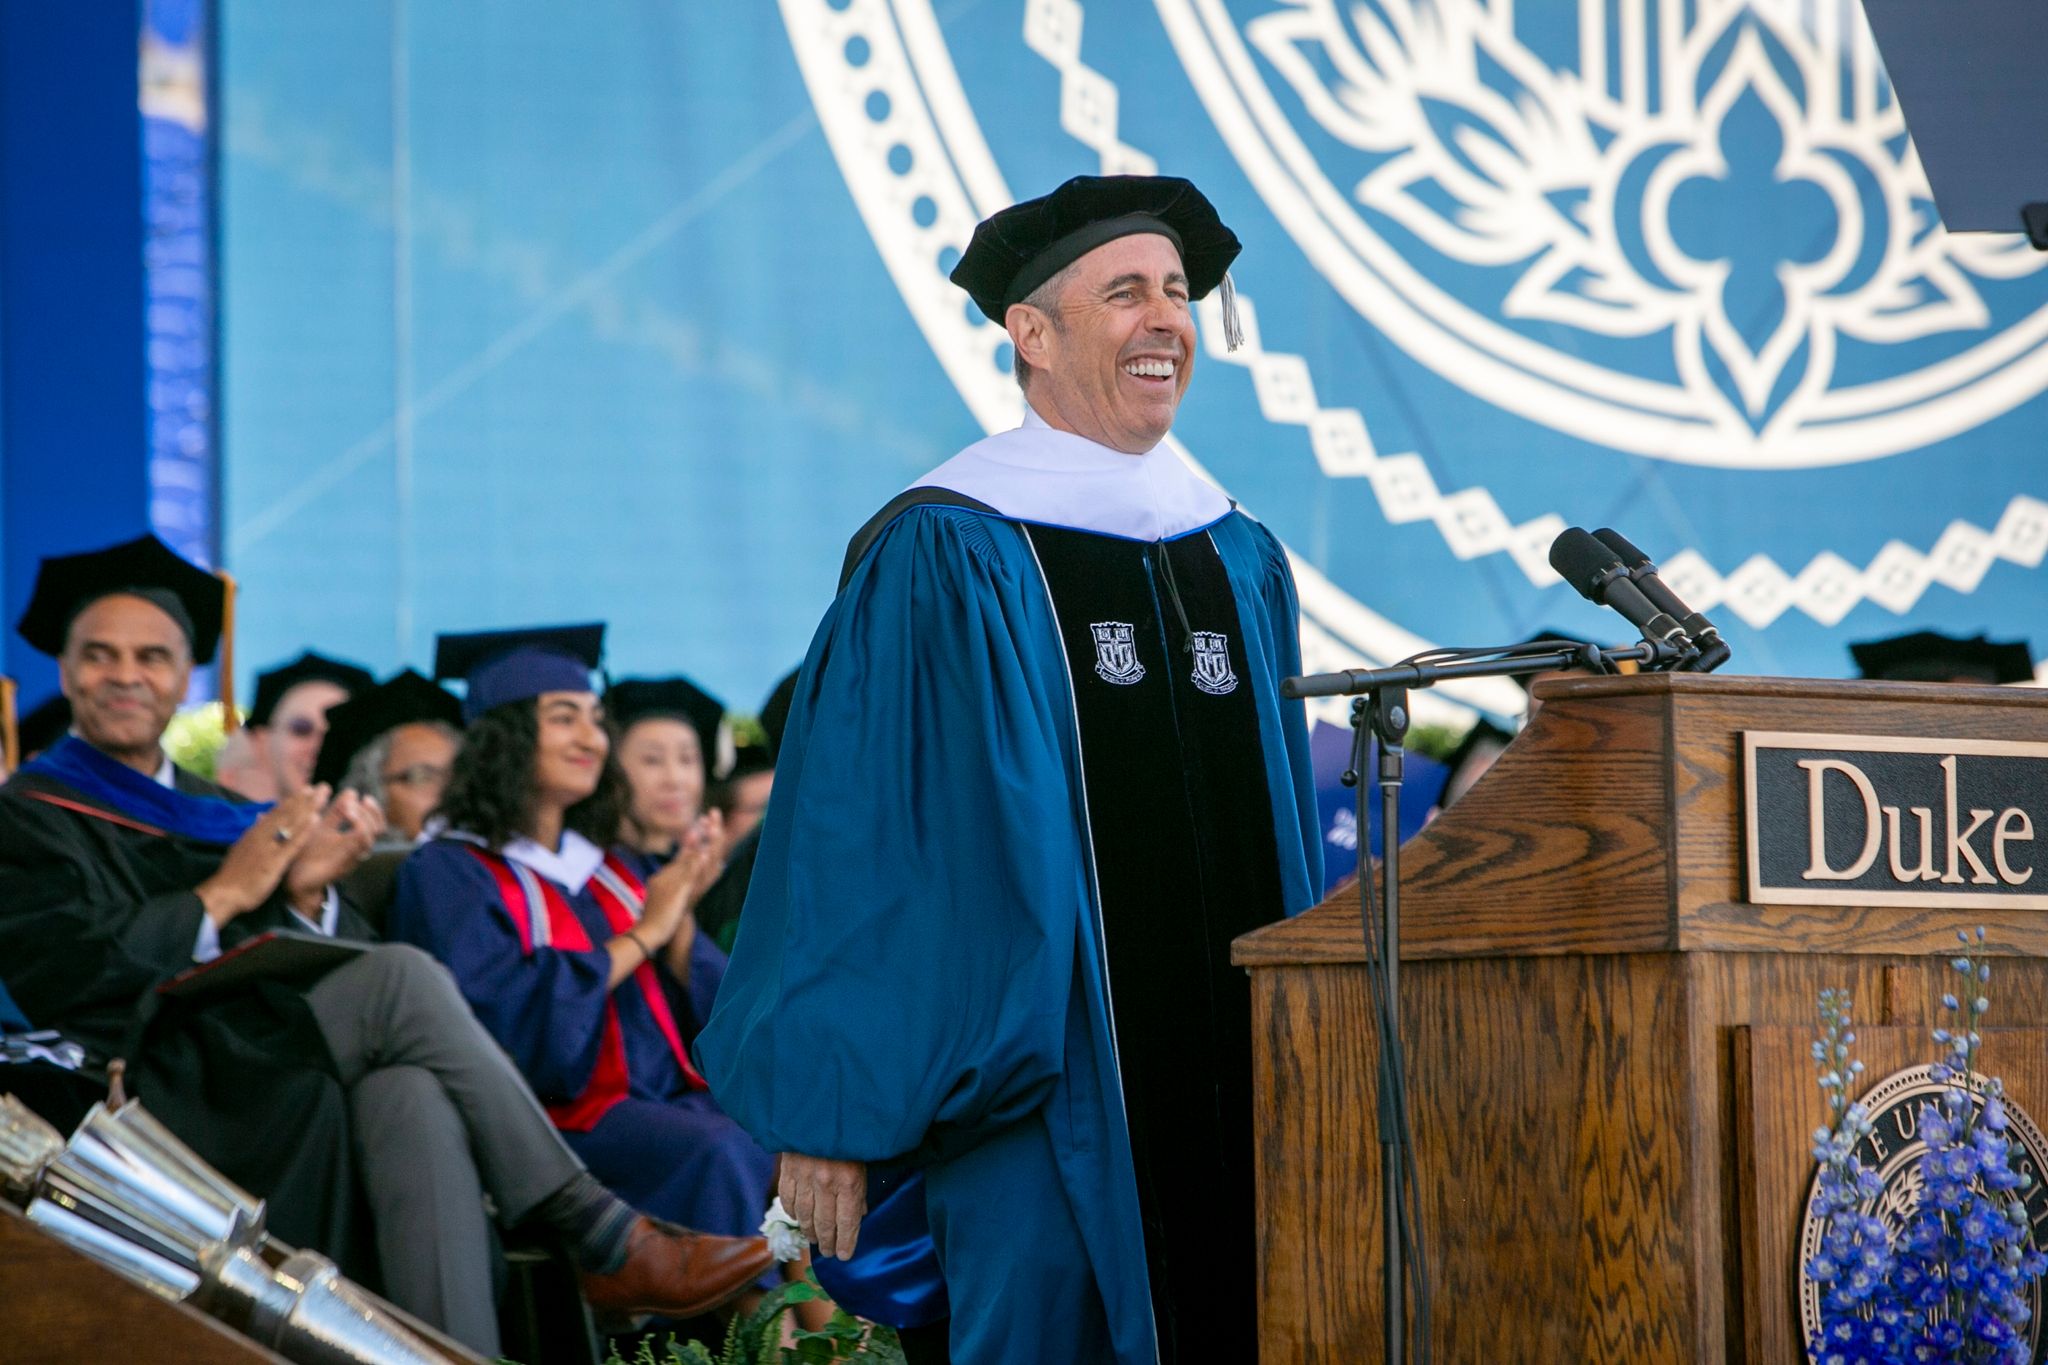 Der Comedian und Festredner Jerry Seinfeld bei der Abschlussfeier der Duke Universität.